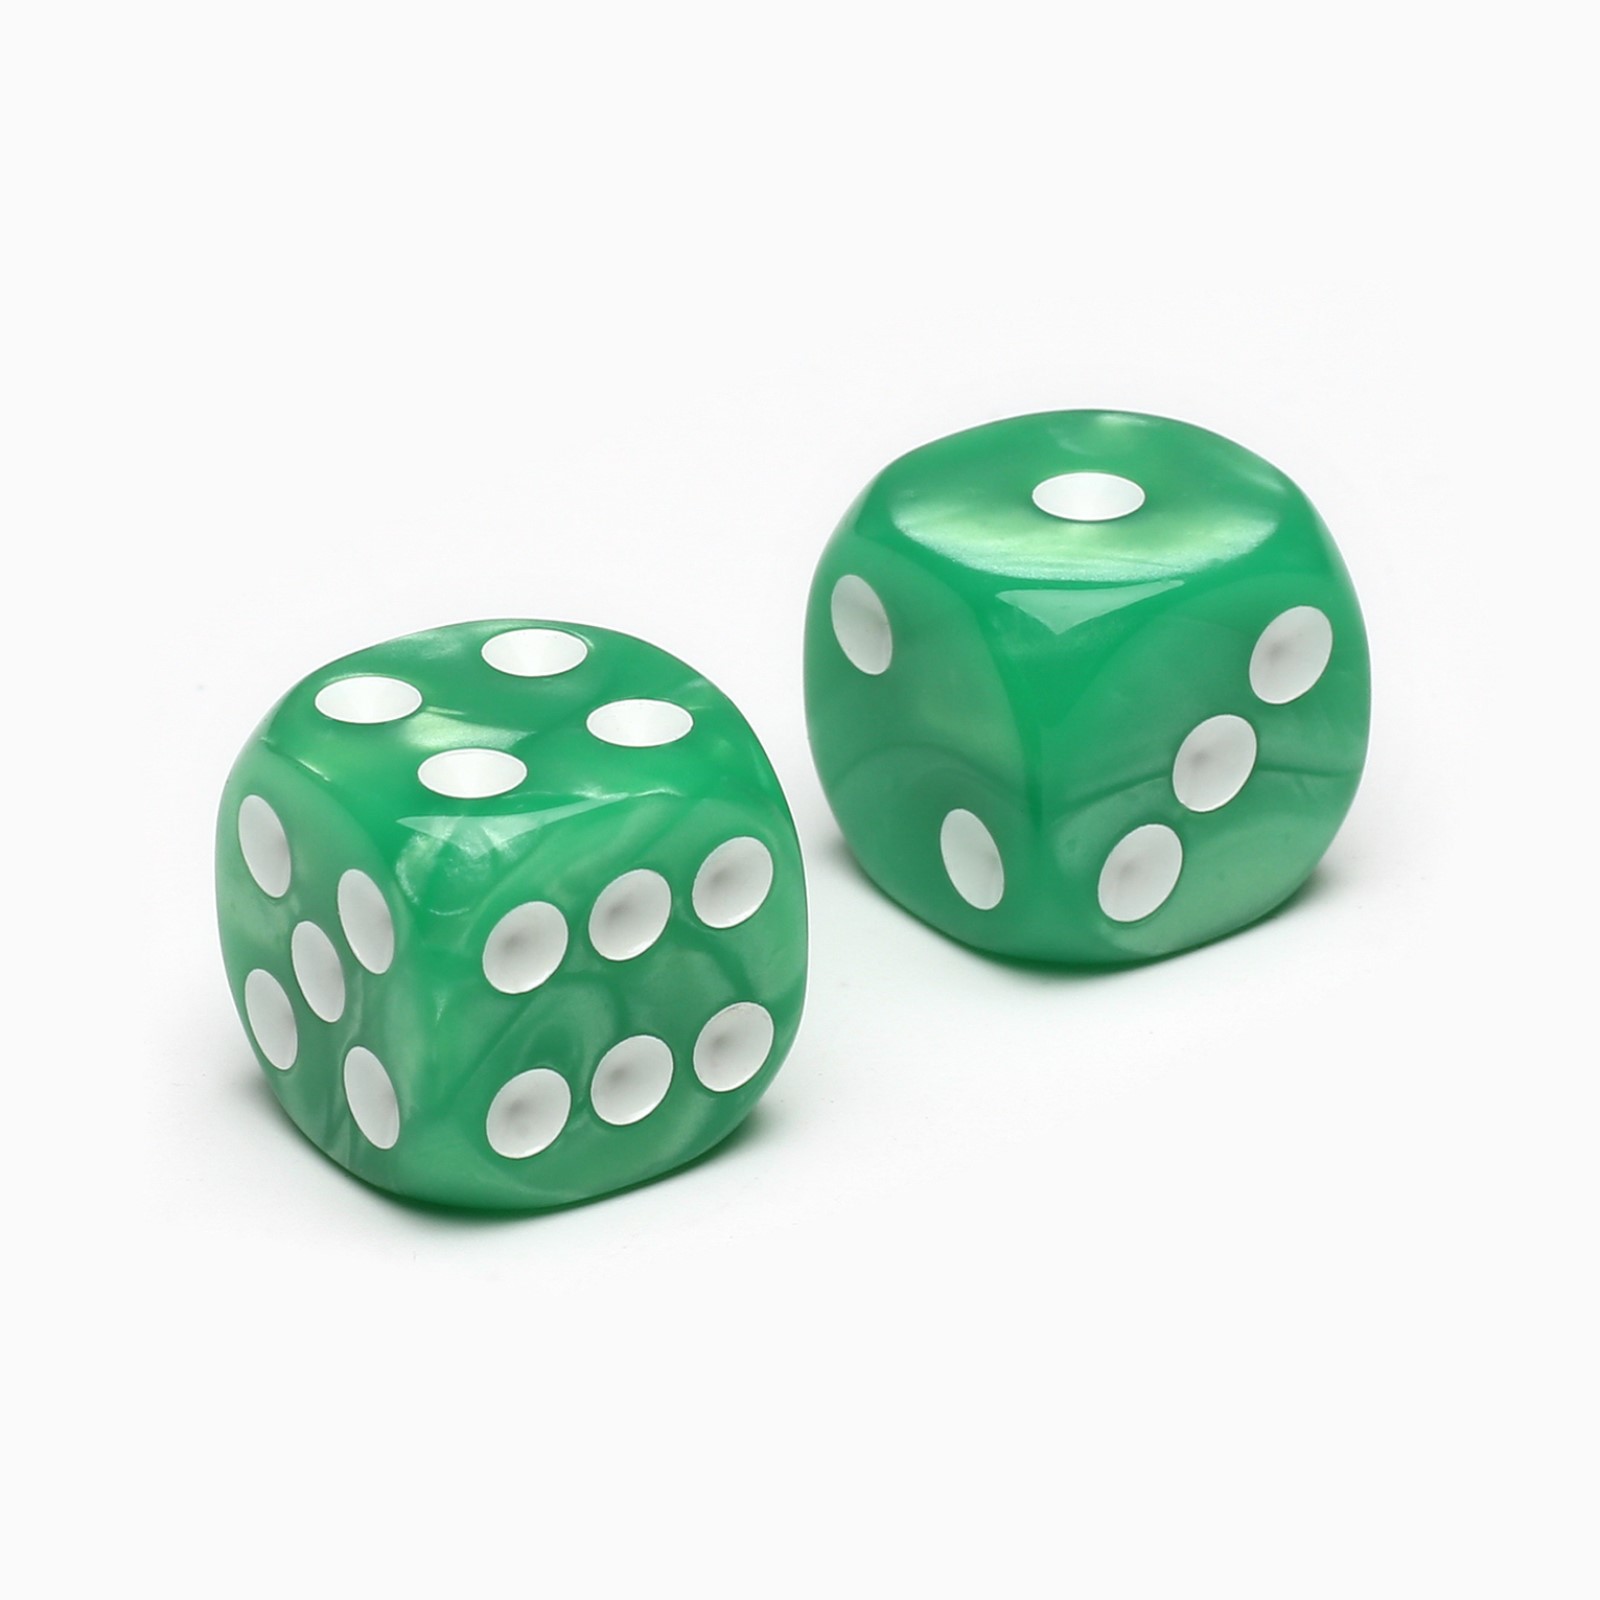 Кубики Sima-Land Игральные «Время игры» 1.6х1.6 см набор 2 шт зеленые - фото 1